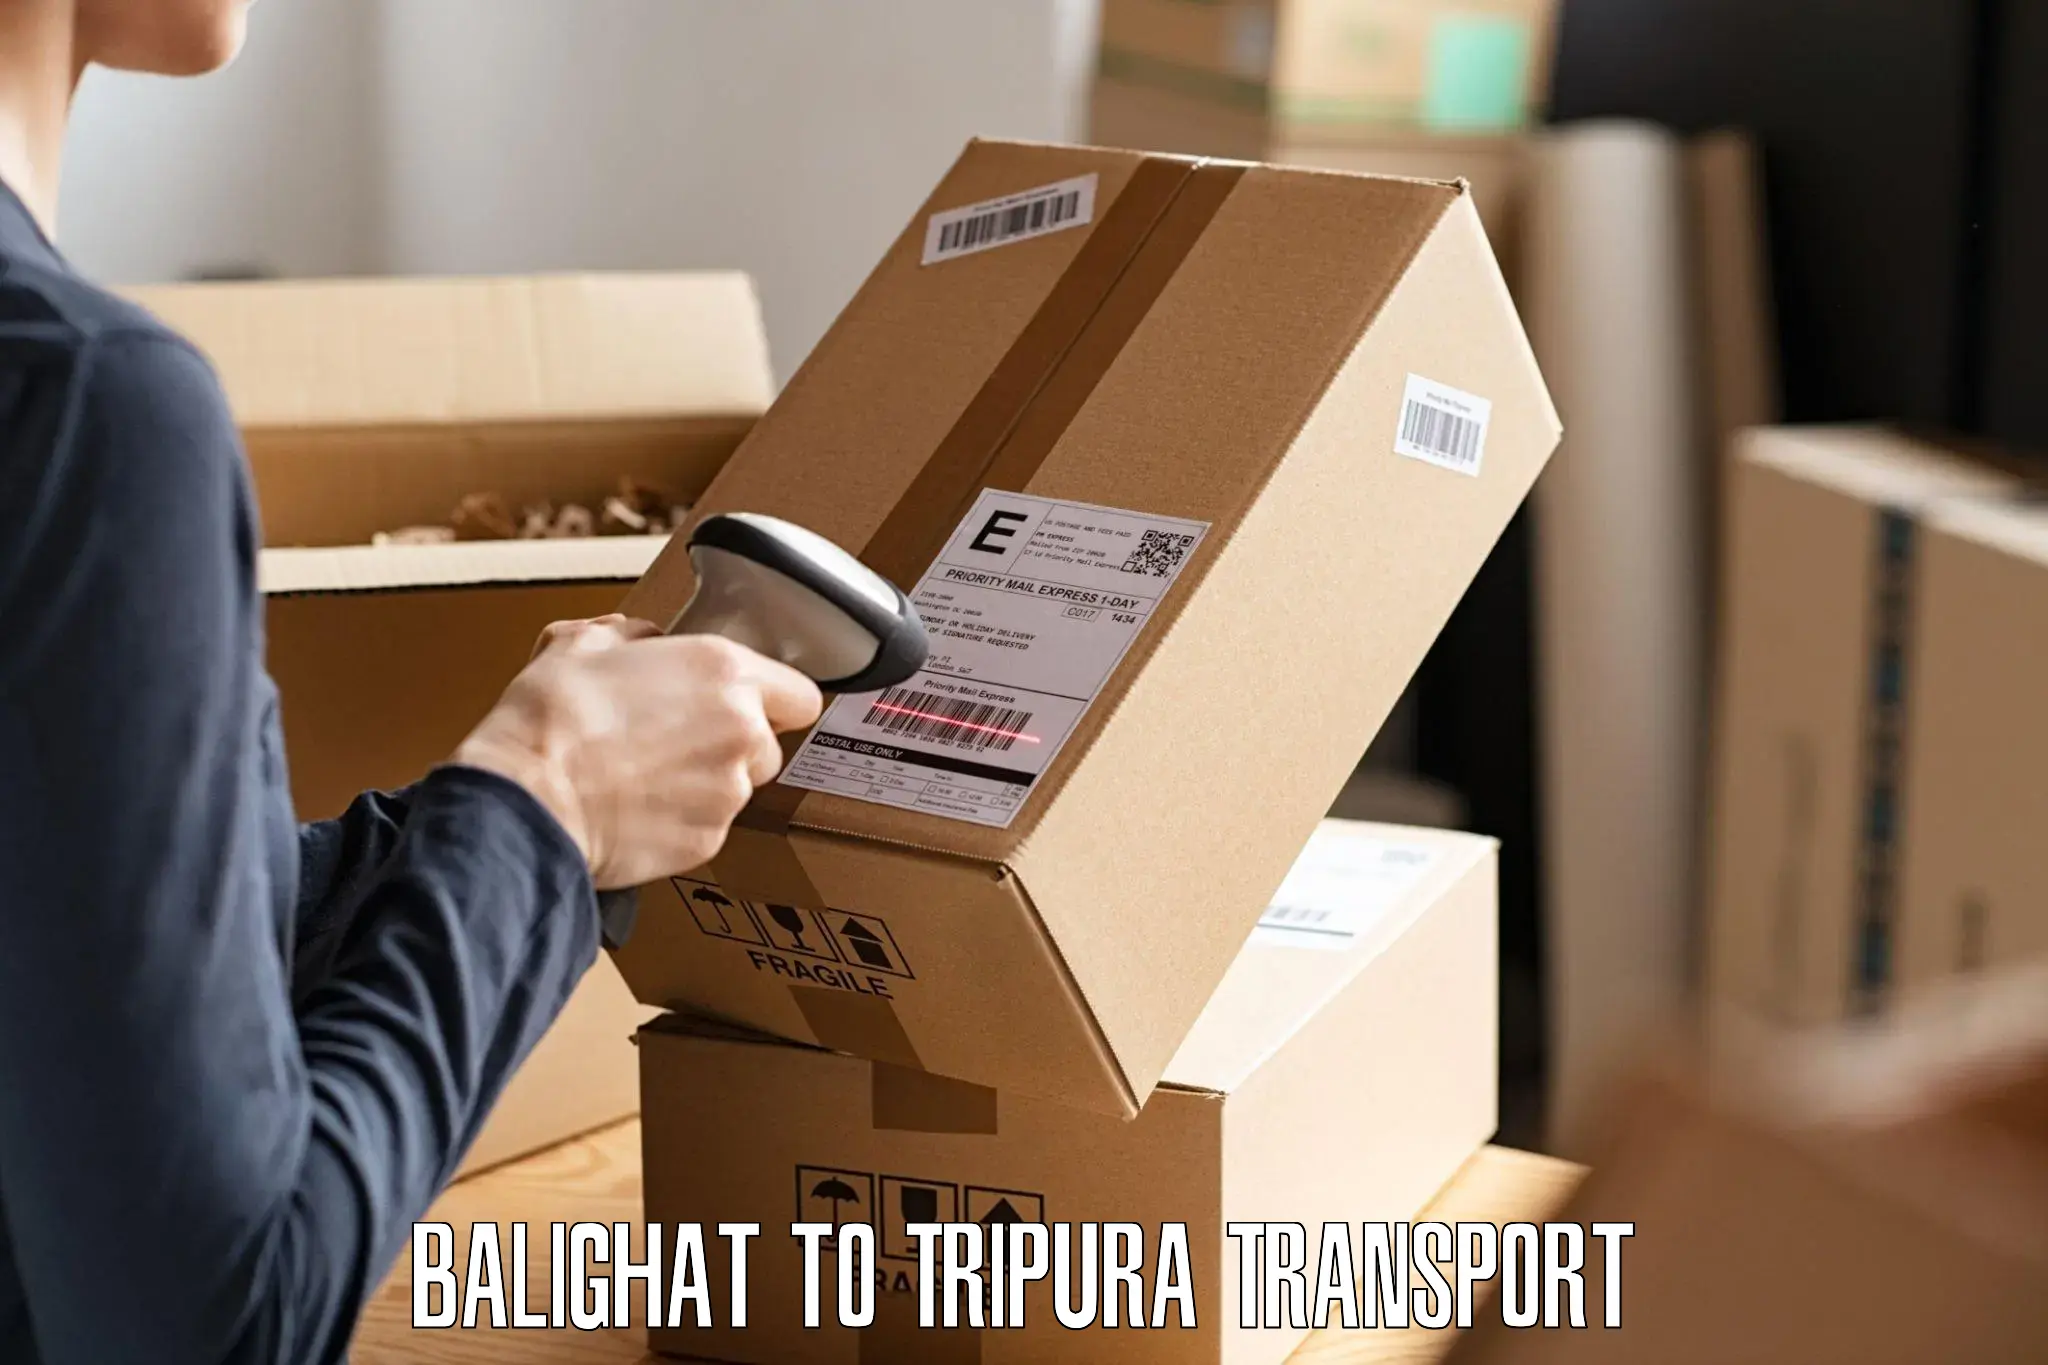 Online transport service Balighat to Manughat